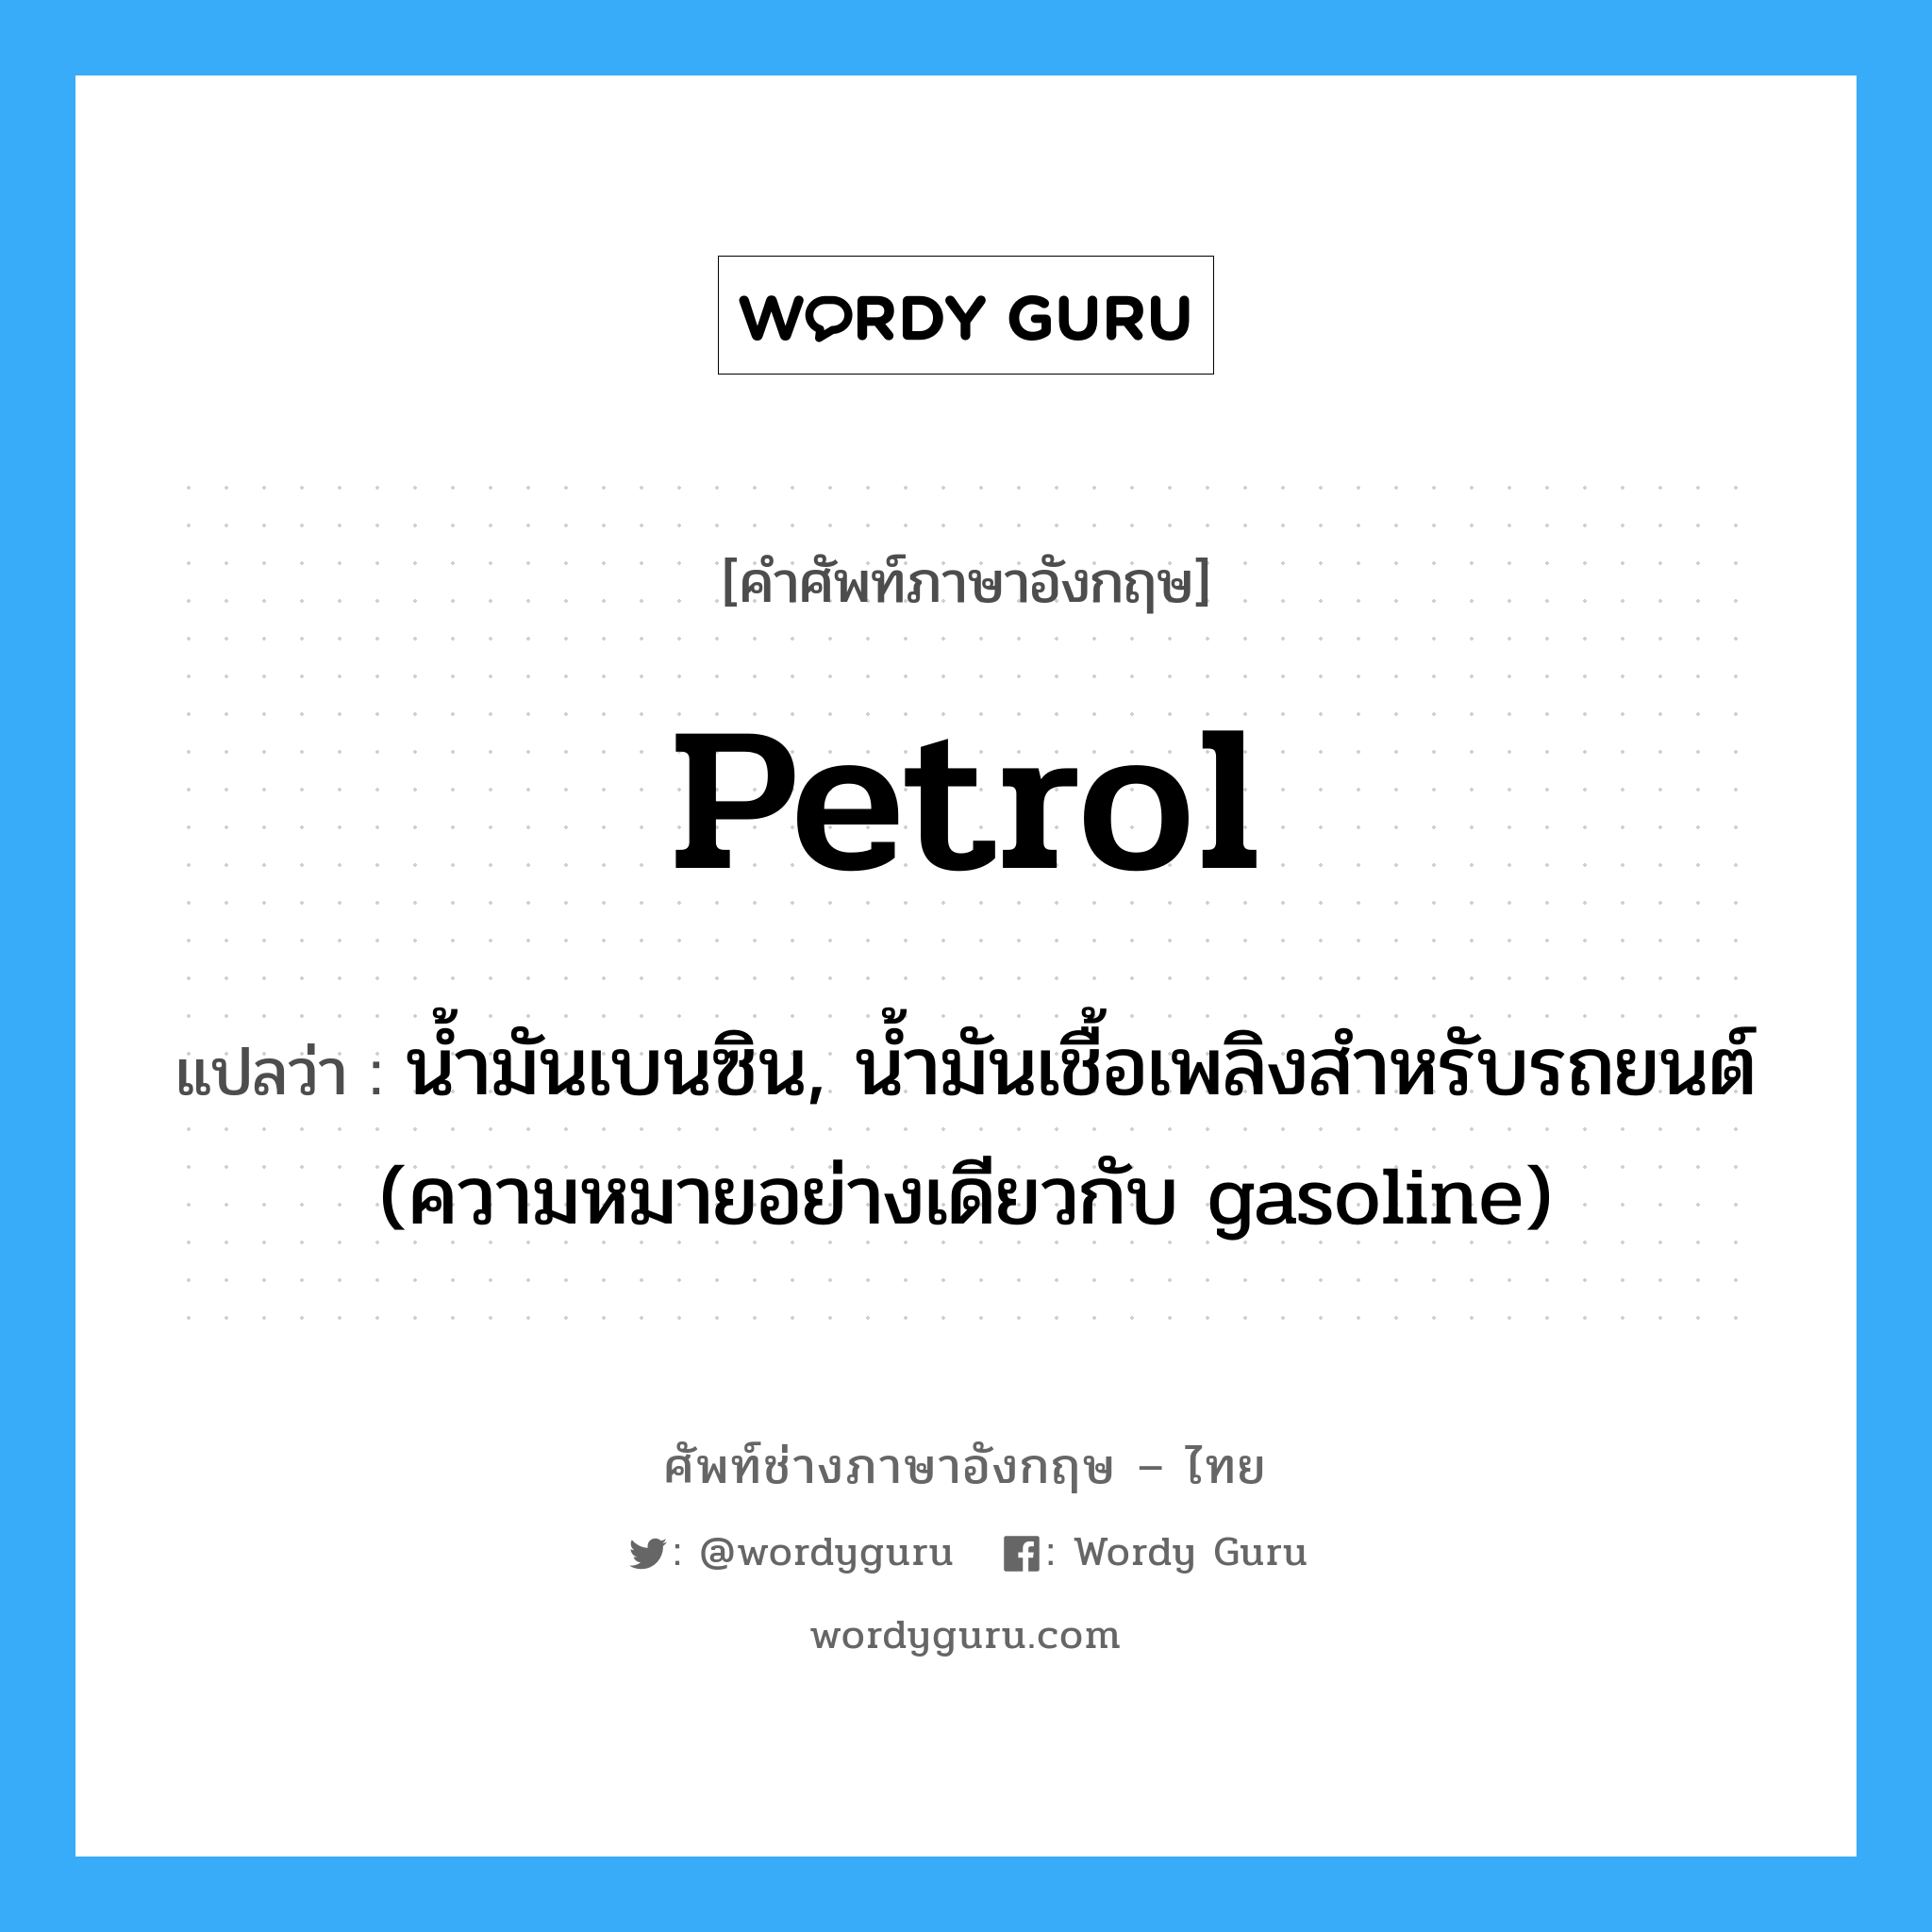 petrol แปลว่า?, คำศัพท์ช่างภาษาอังกฤษ - ไทย petrol คำศัพท์ภาษาอังกฤษ petrol แปลว่า น้ำมันเบนซิน, น้ำมันเชื้อเพลิงสำหรับรถยนต์ (ความหมายอย่างเดียวกับ gasoline)